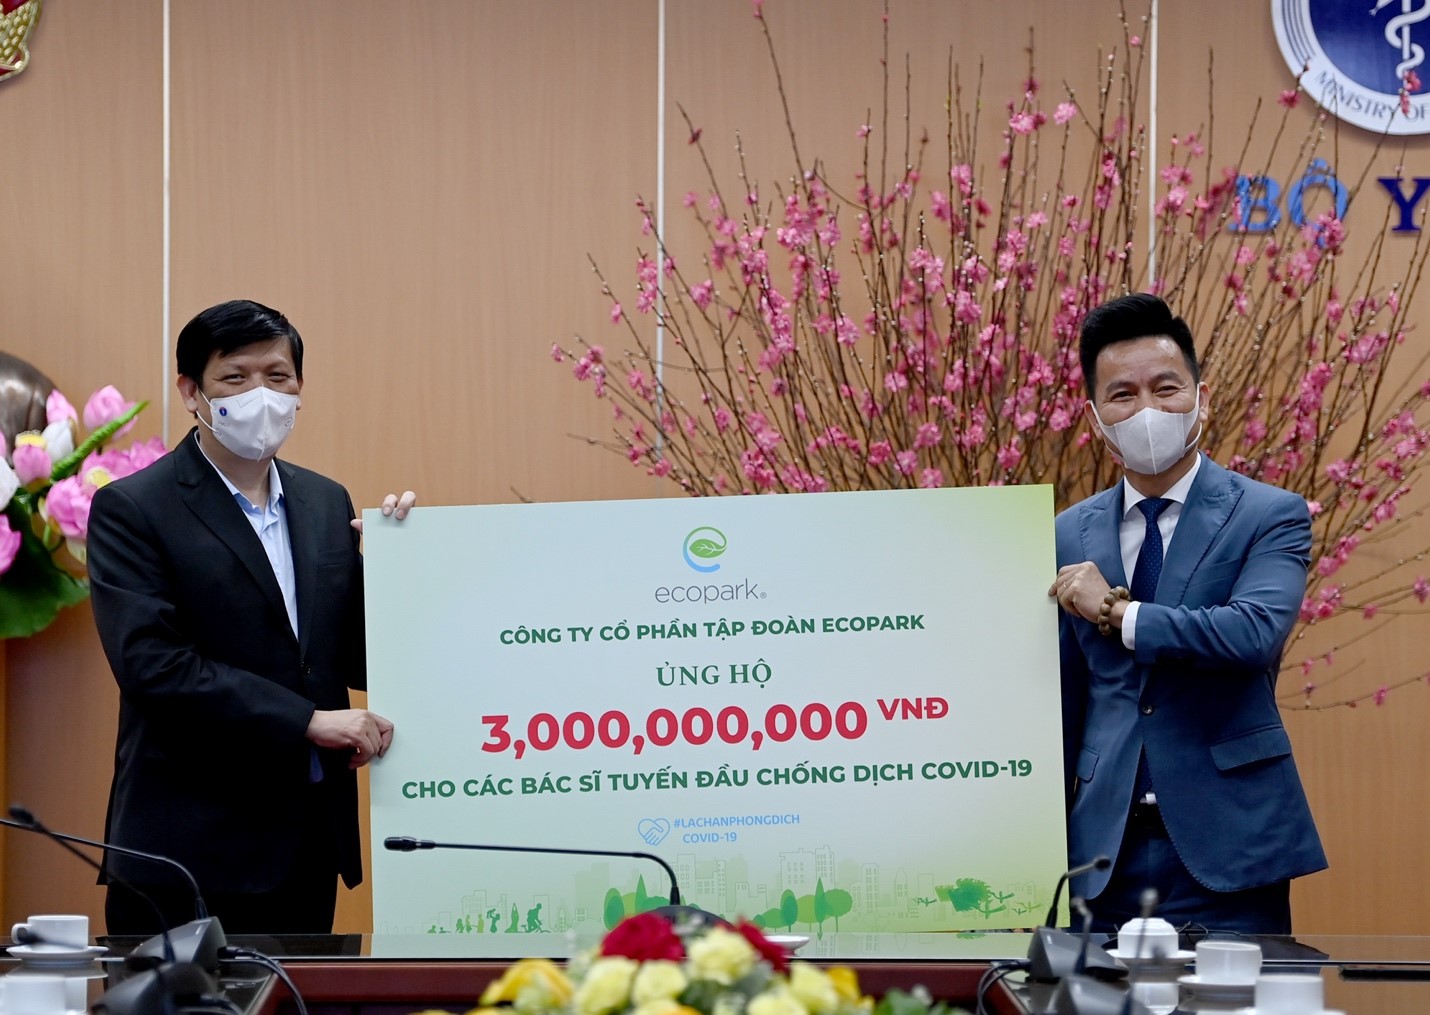 Ông Trần Quốc Việt – Tổng Giám đốc Ecopark (bên phải) trao tặng 3 tỷ đồng cho các bác sĩ tuyến đầu chống dịch Covid-19